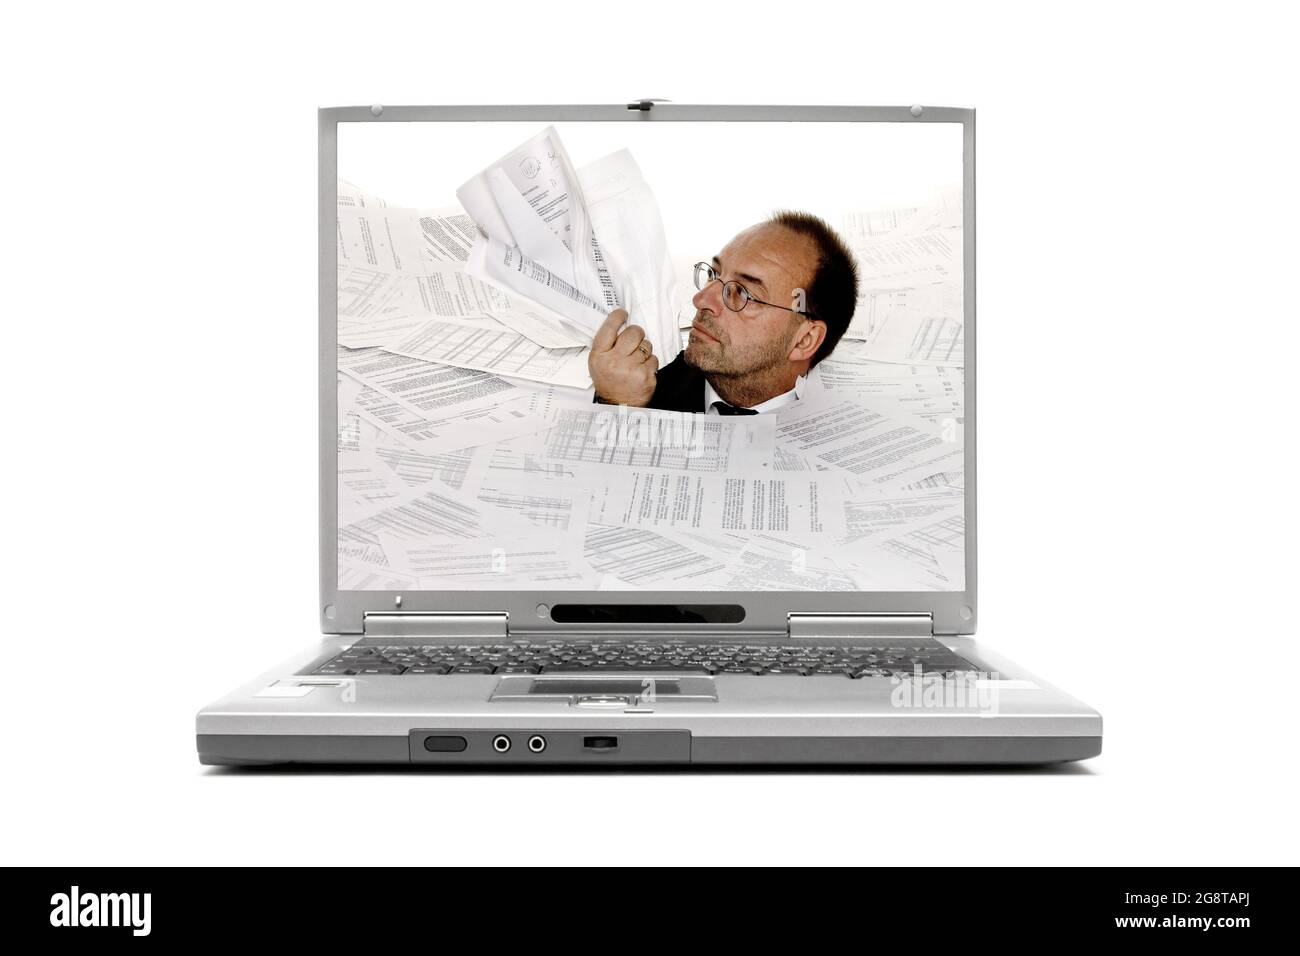 Image « une facture étouffante » sur l'écran de l'ordinateur portable Banque D'Images